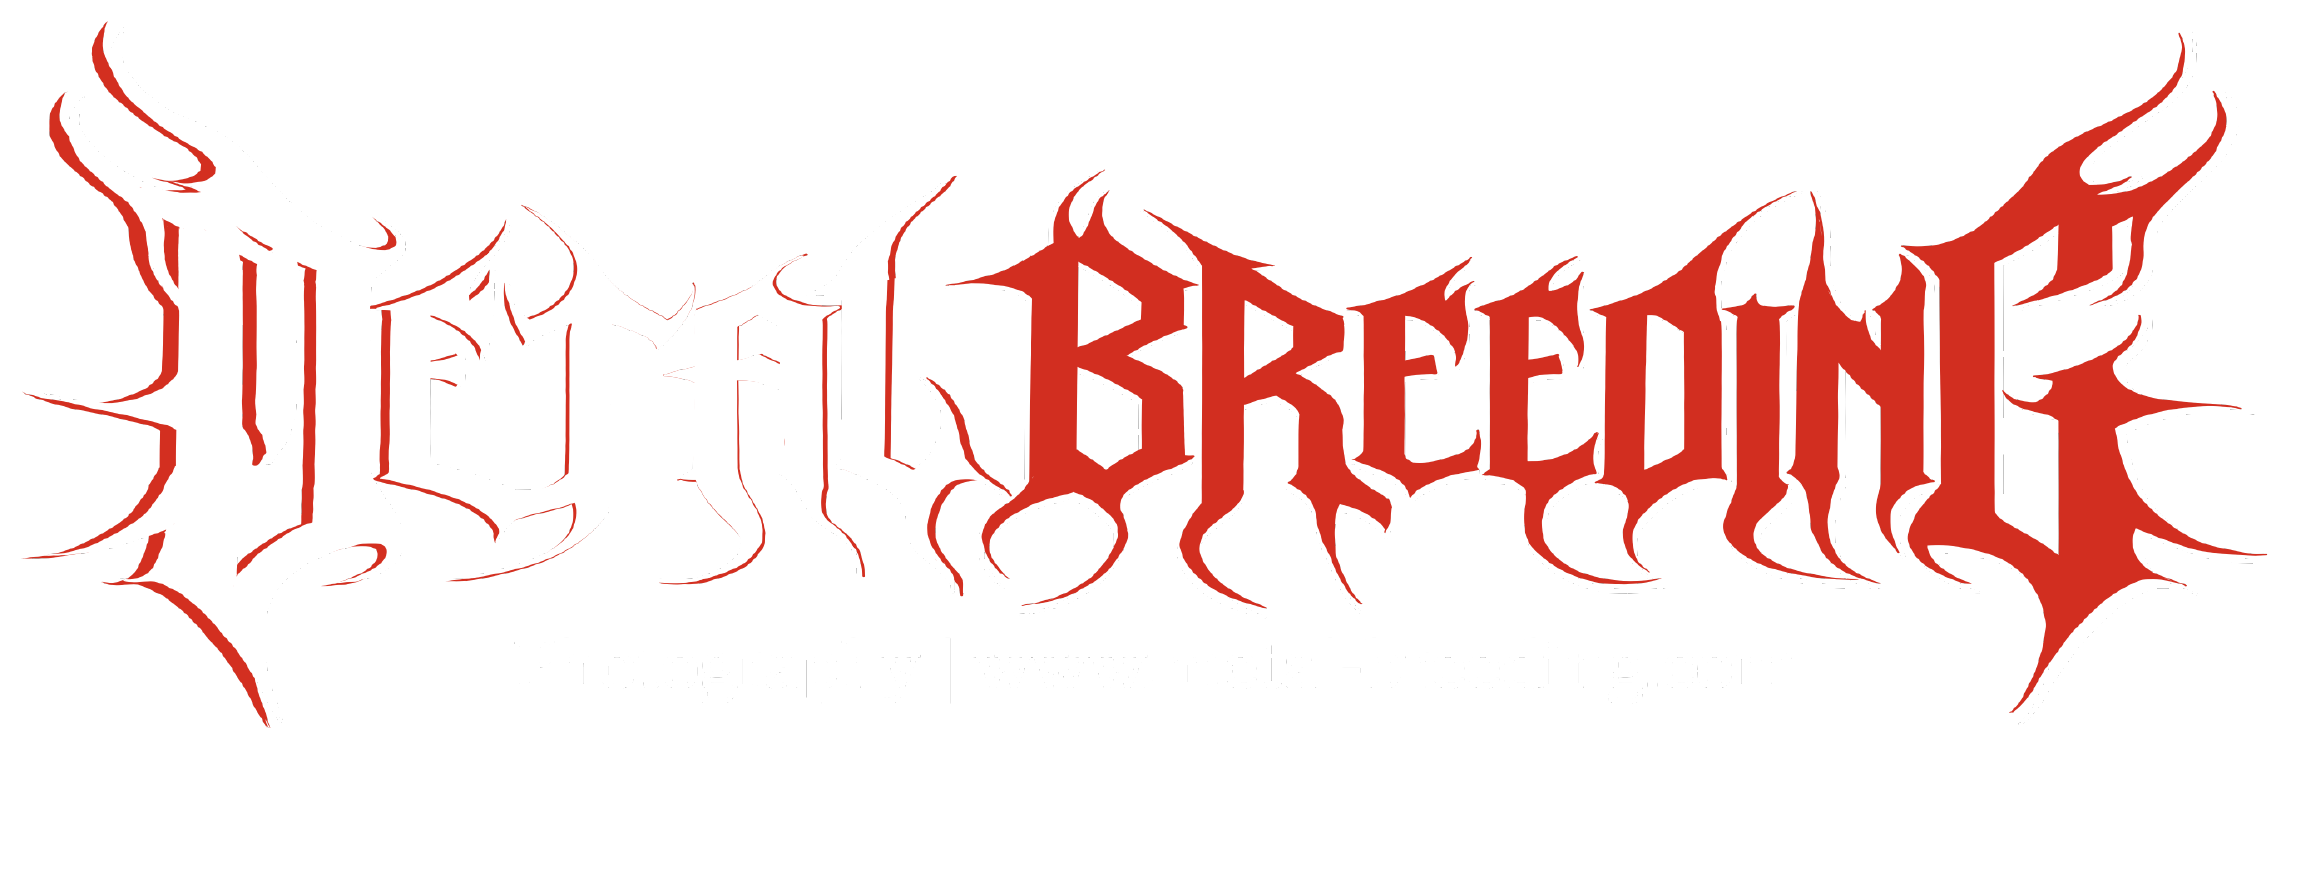 Metal Breeding